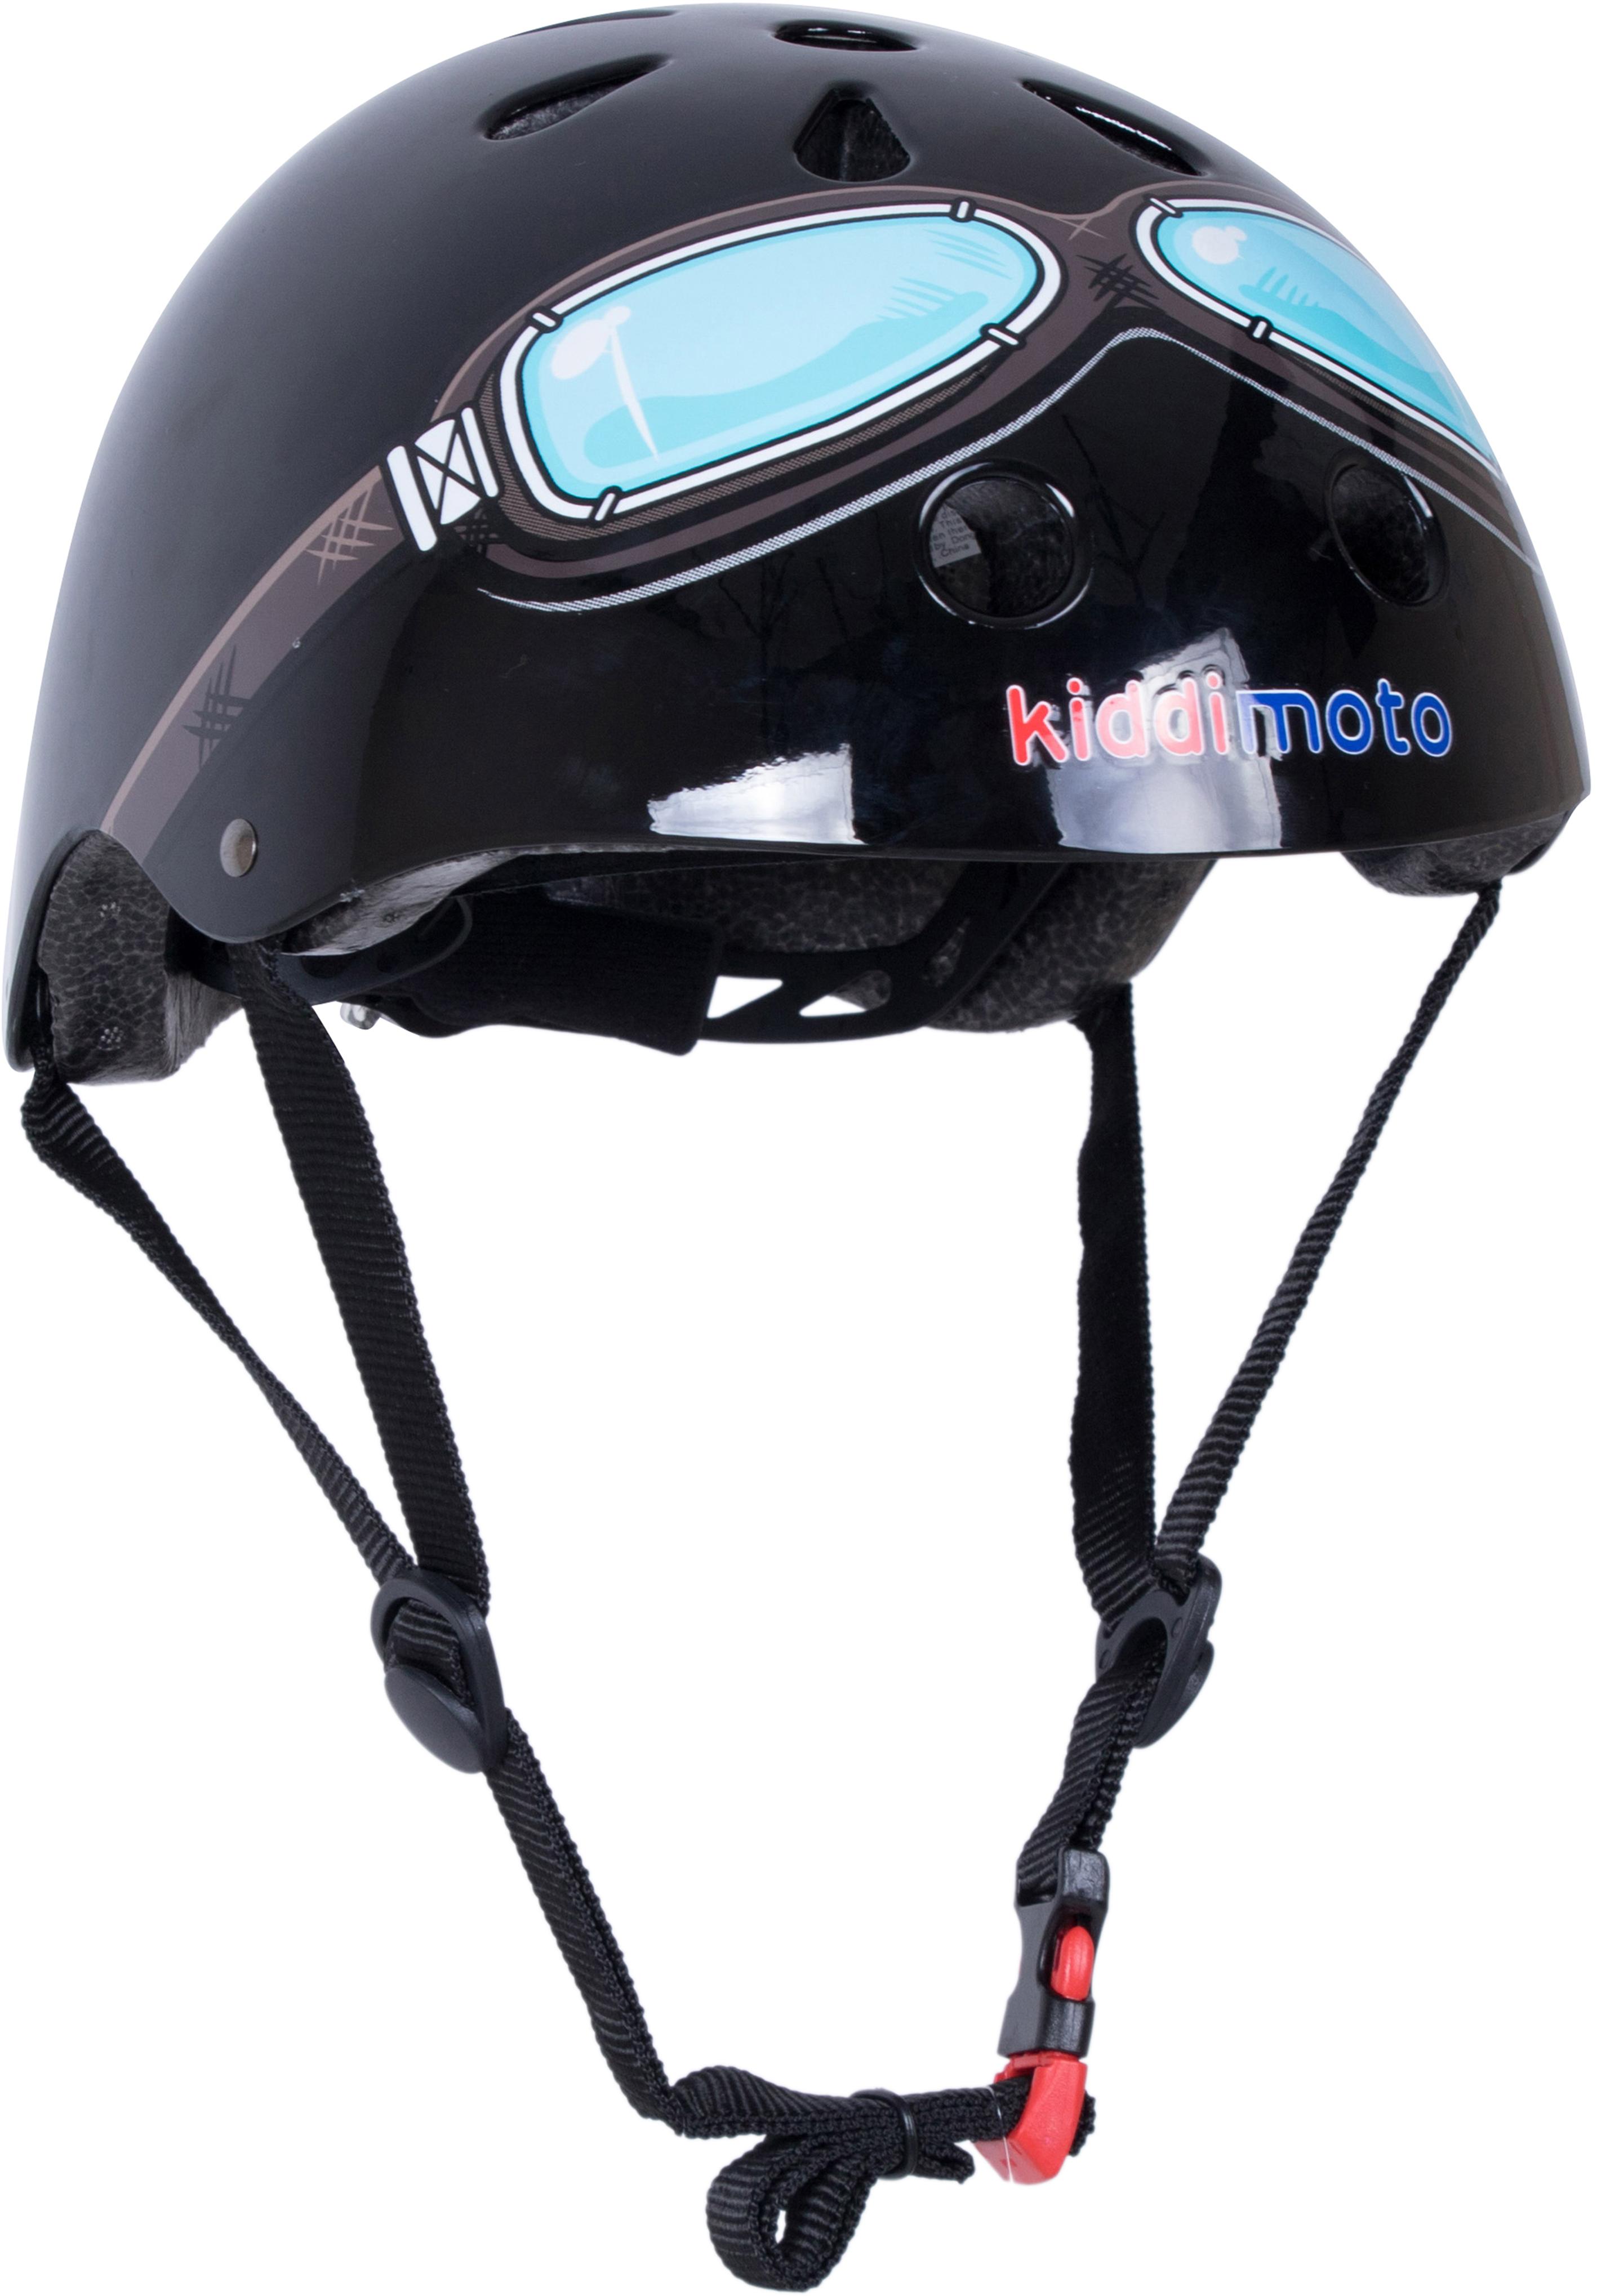 Kiddimoto Black Goggle Helmet - Medium